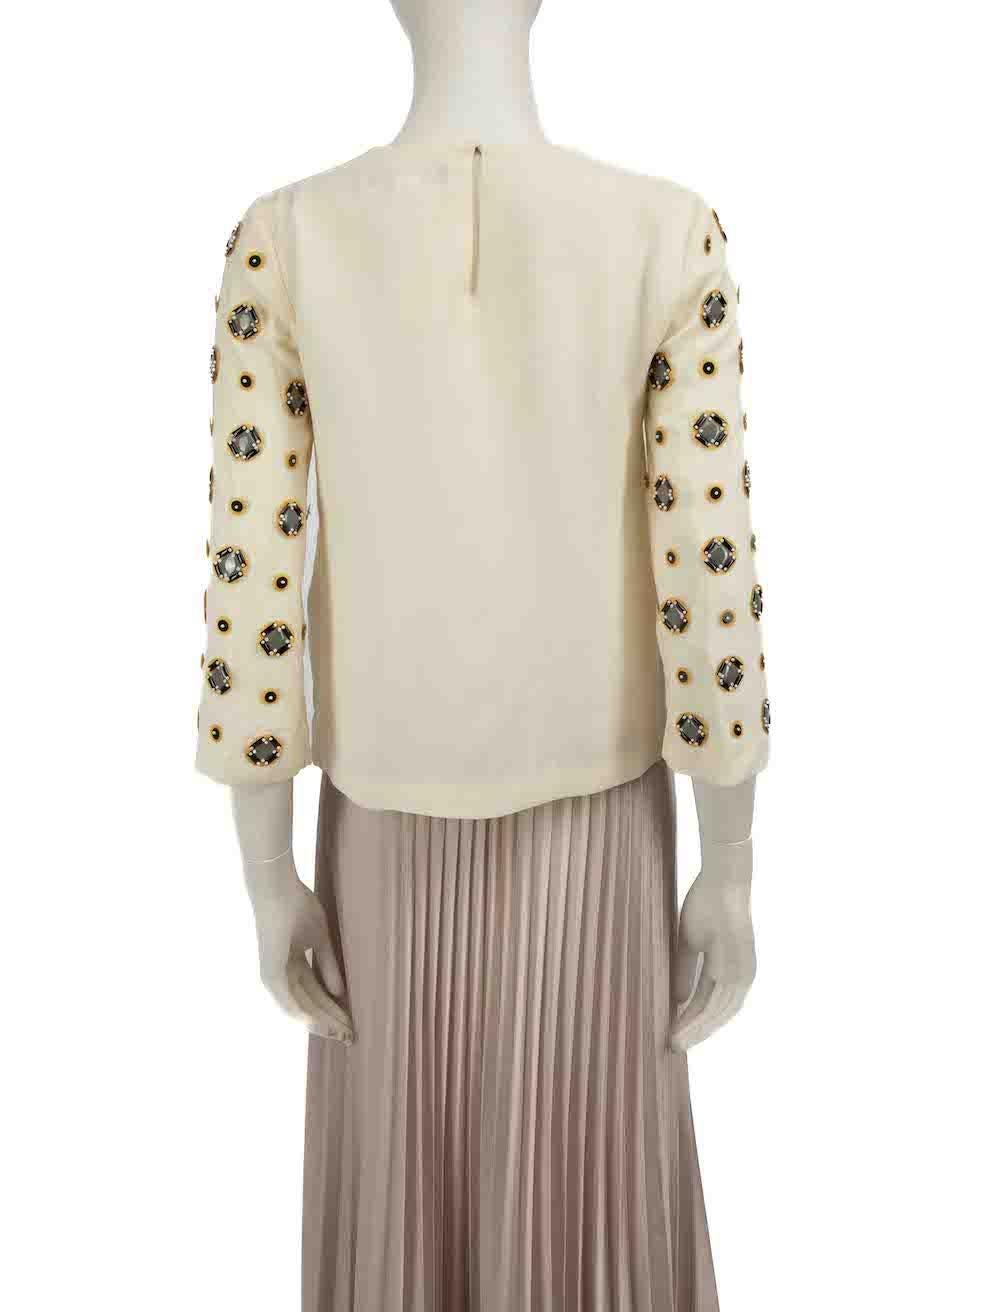 Diane Von Furstenberg Ecru Silk Embellished Top Size S In Good Condition For Sale In London, GB